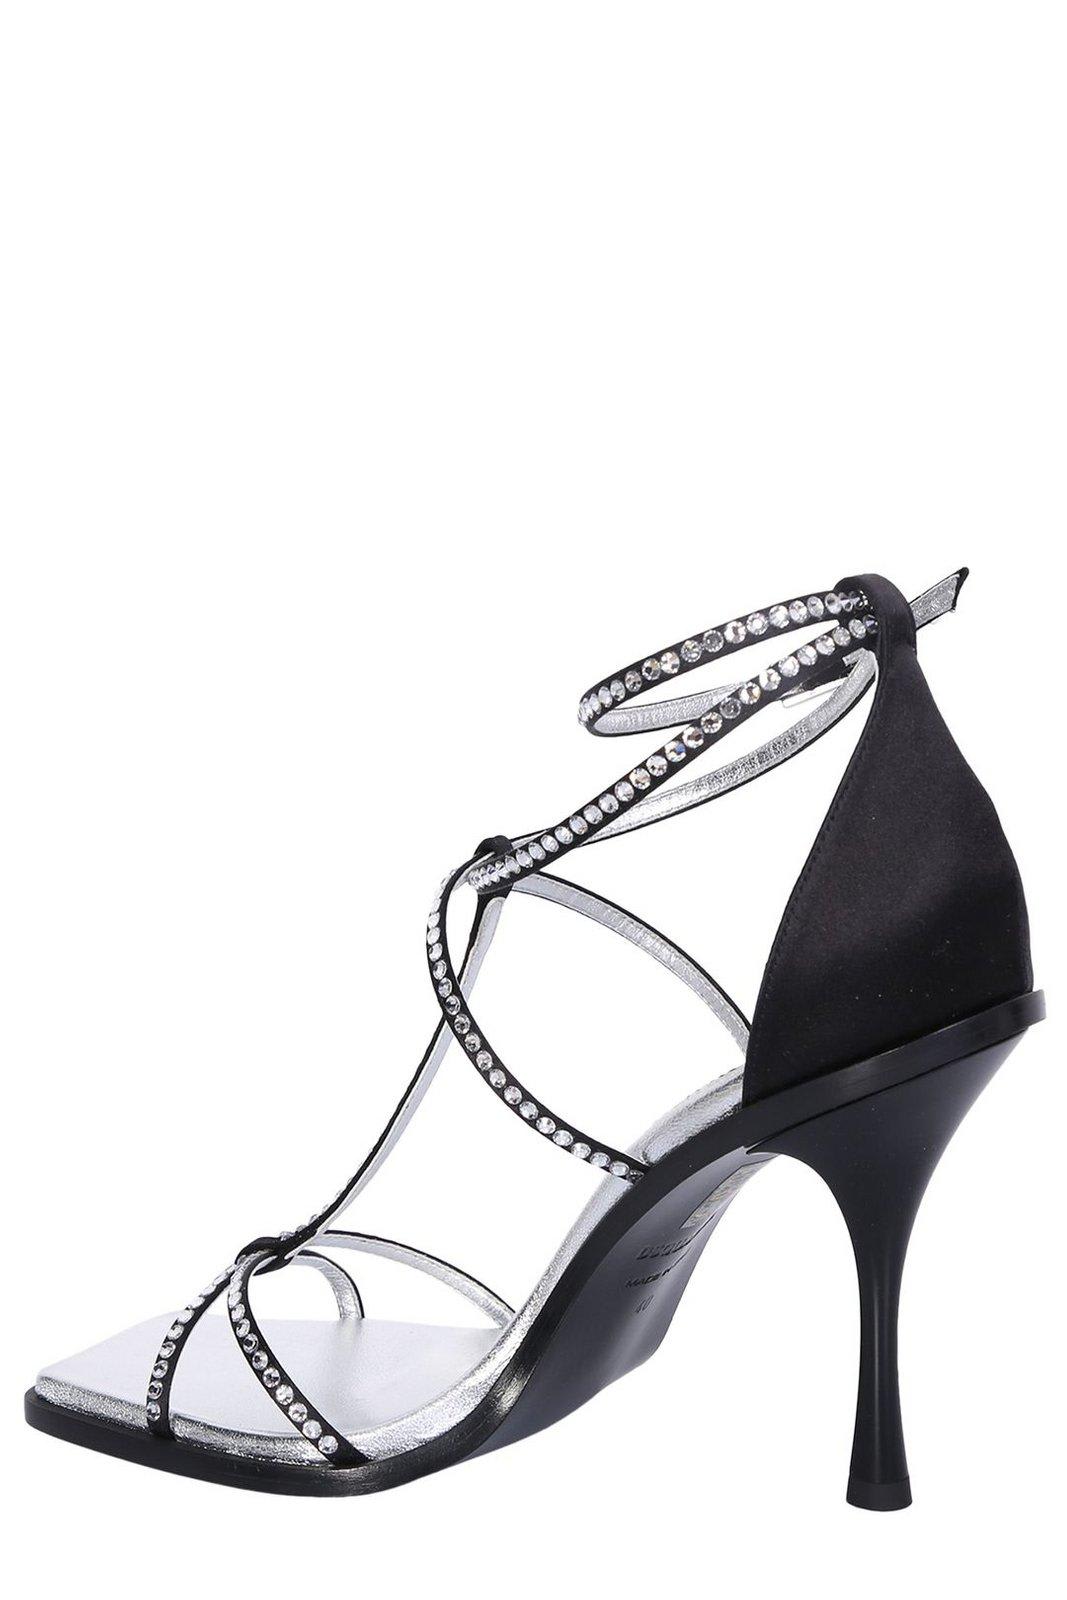 Shop Dsquared2 Embellished Open Toe Sandals In Black/silver